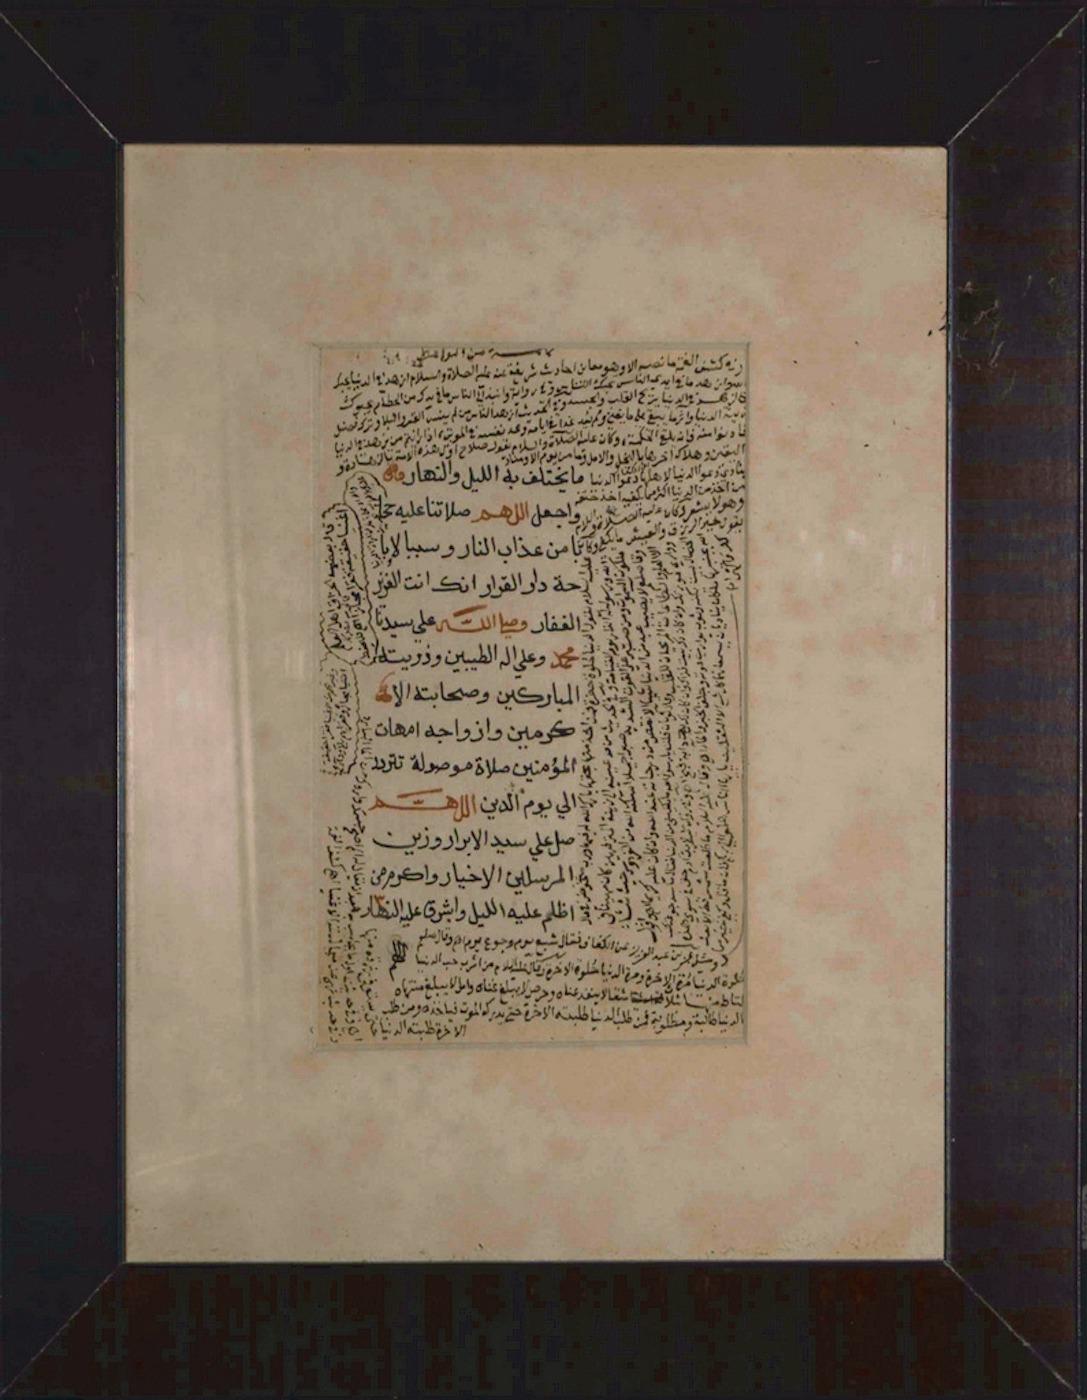 Tag und Nacht - Arabische Kalligraphie  ist ein wertvolles Manuskript mit islamischen heiligen Versen in alter Kalligraphie.

Eine Seite, einseitig, in arabischer Sprache, das Originalblatt ( cm 17x 11) ist in ausgezeichnetem Zustand und unter